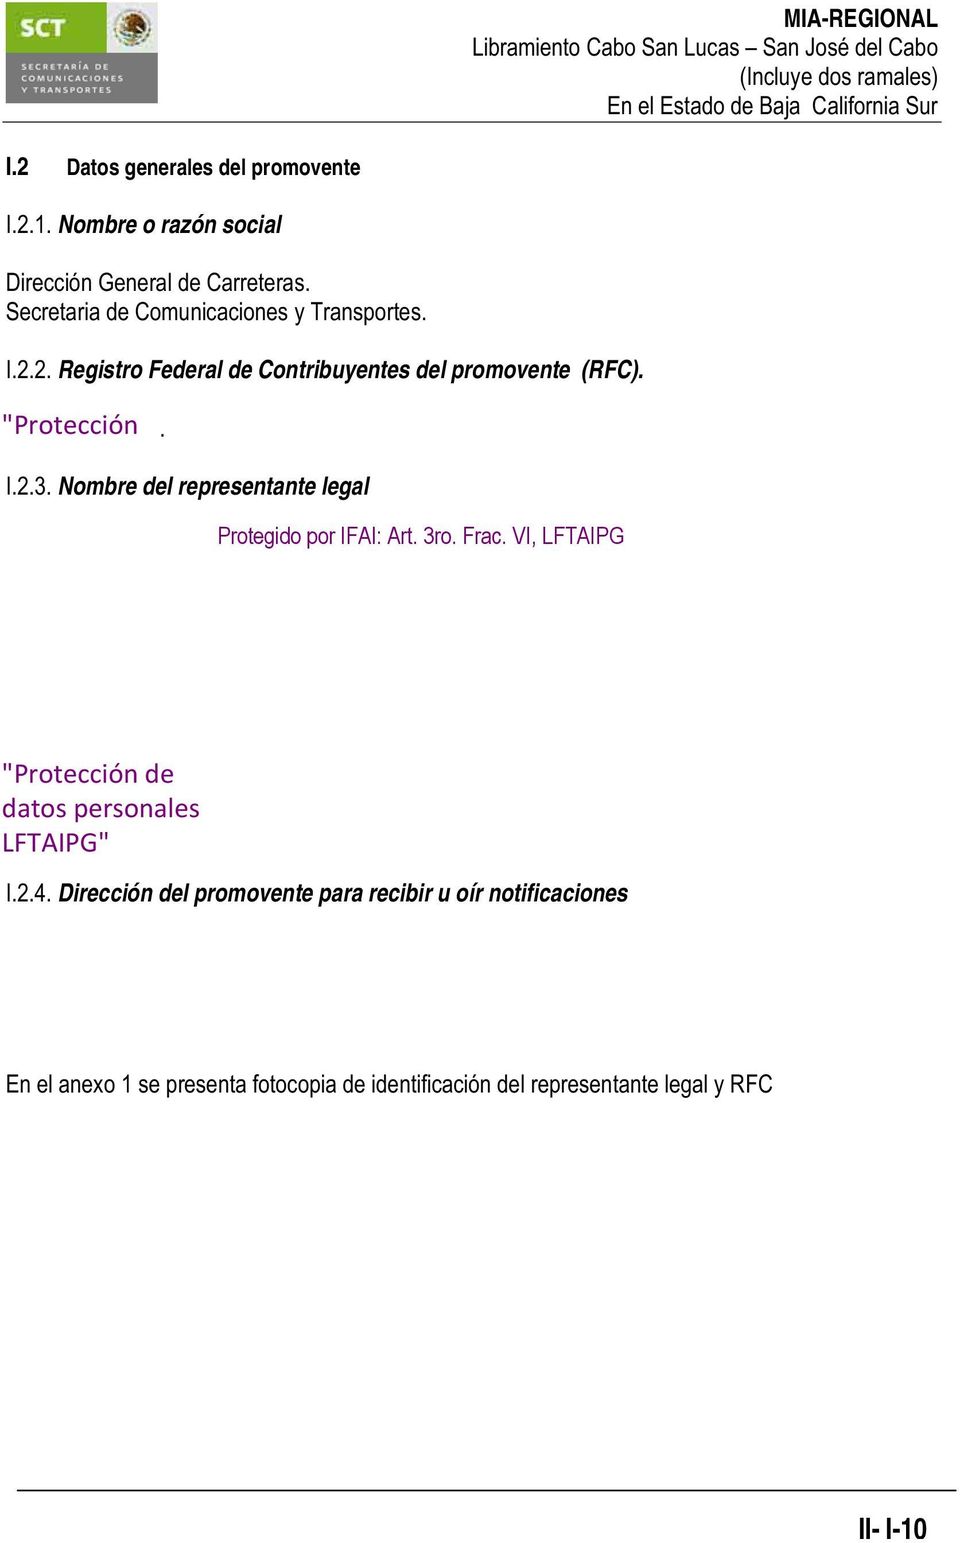 de datos personales I.2.3. Nombre del representante legal LFTAIPG" Protegido por IFAI: Art. 3ro. Frac.